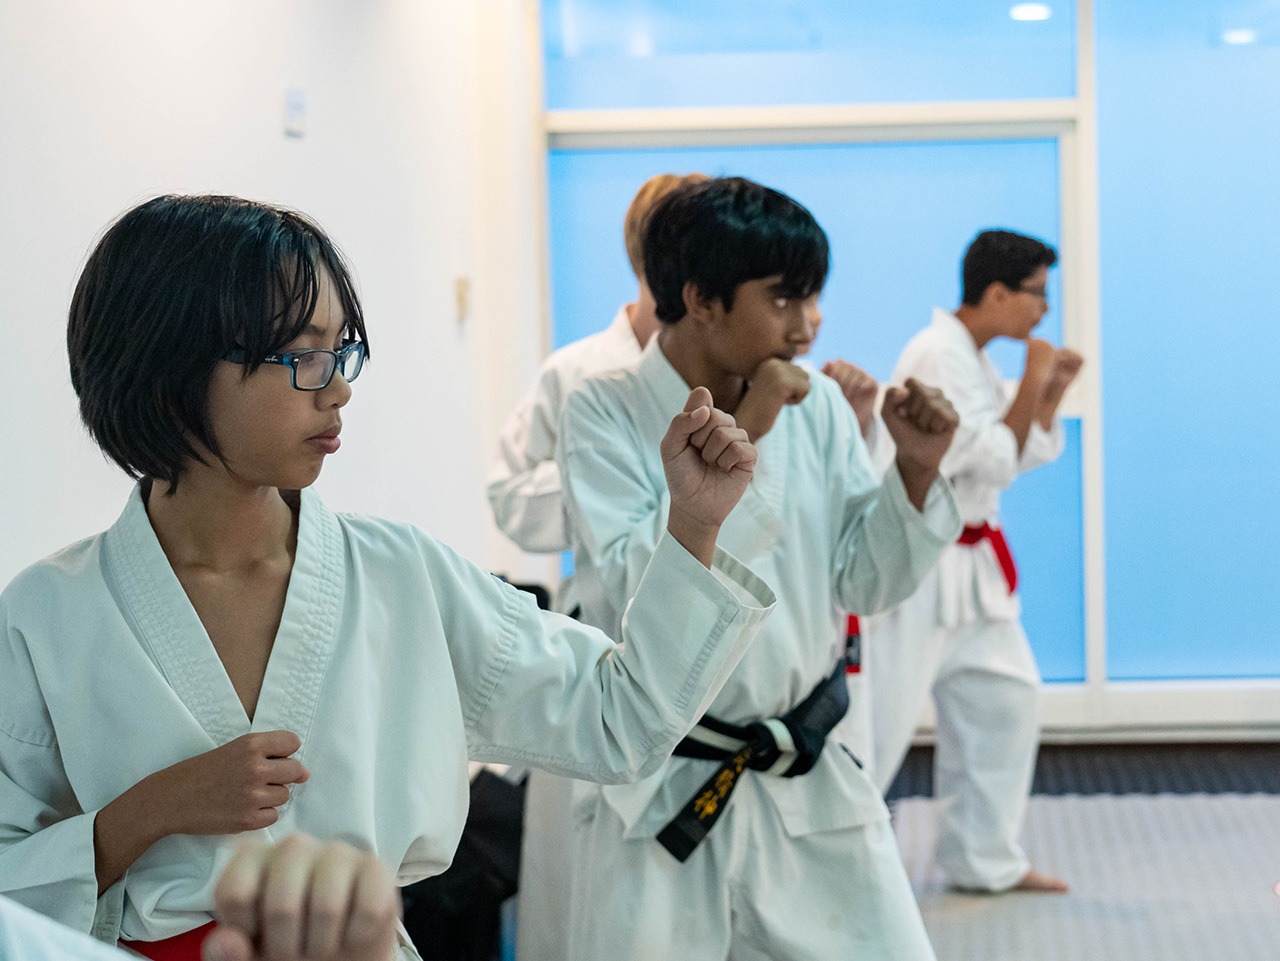 Teens martial arts classes